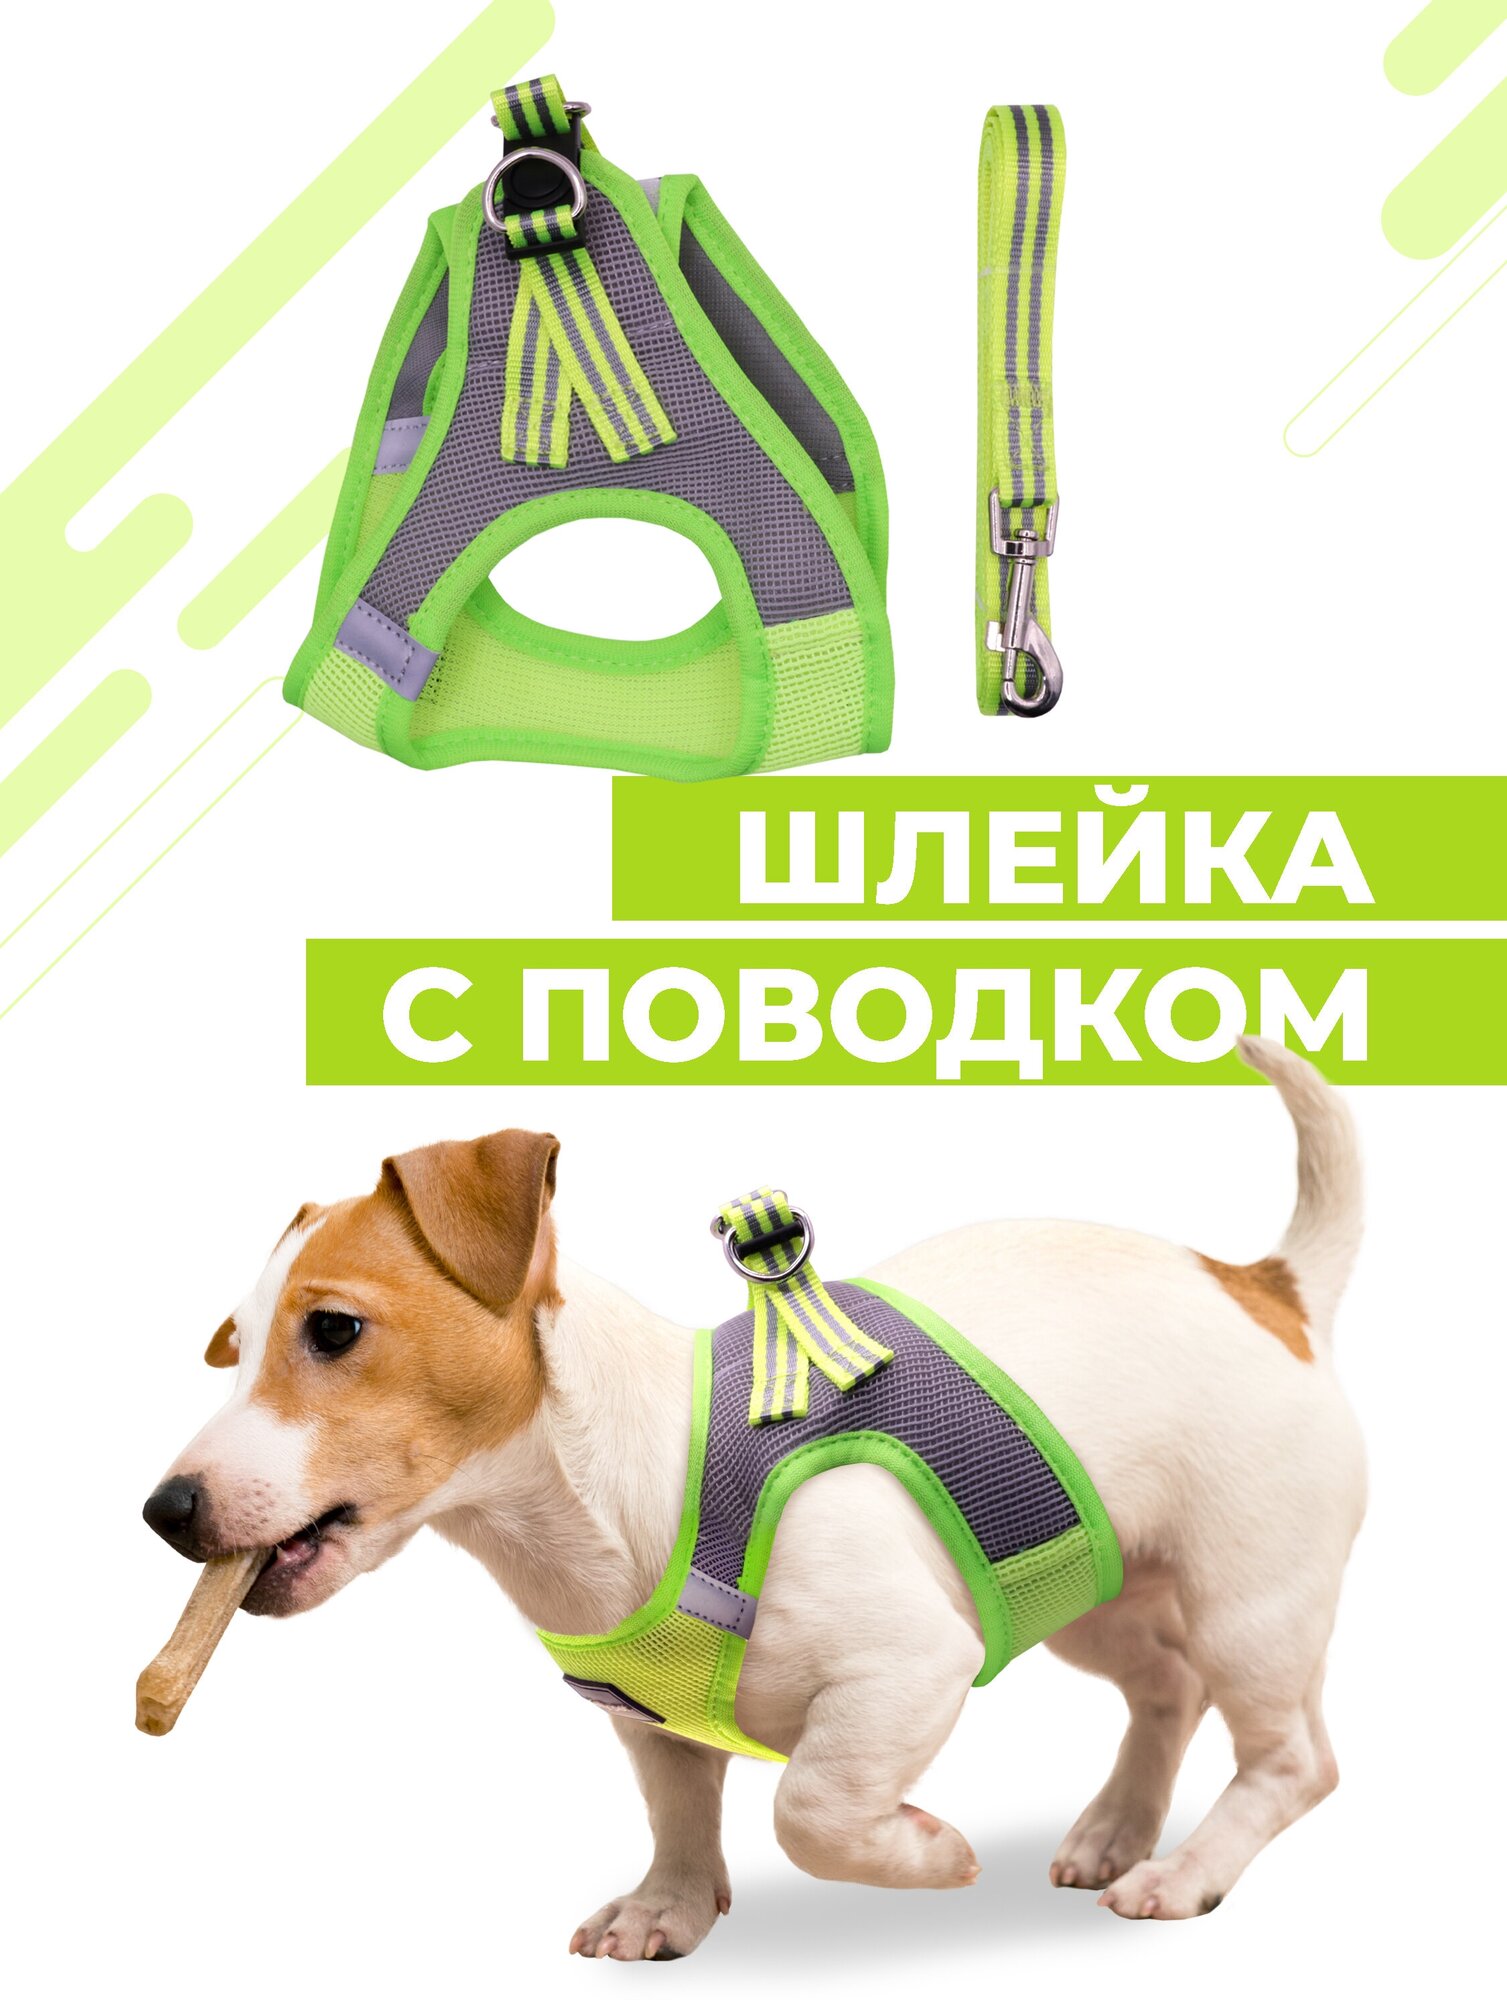 Шлейка для собак и кошек Boomshakalaka, со светоотражающими элементами, с поводком 120 см, размер XS(обхват 32-36 см), вес до 5 кг, цвет желто-зеленый